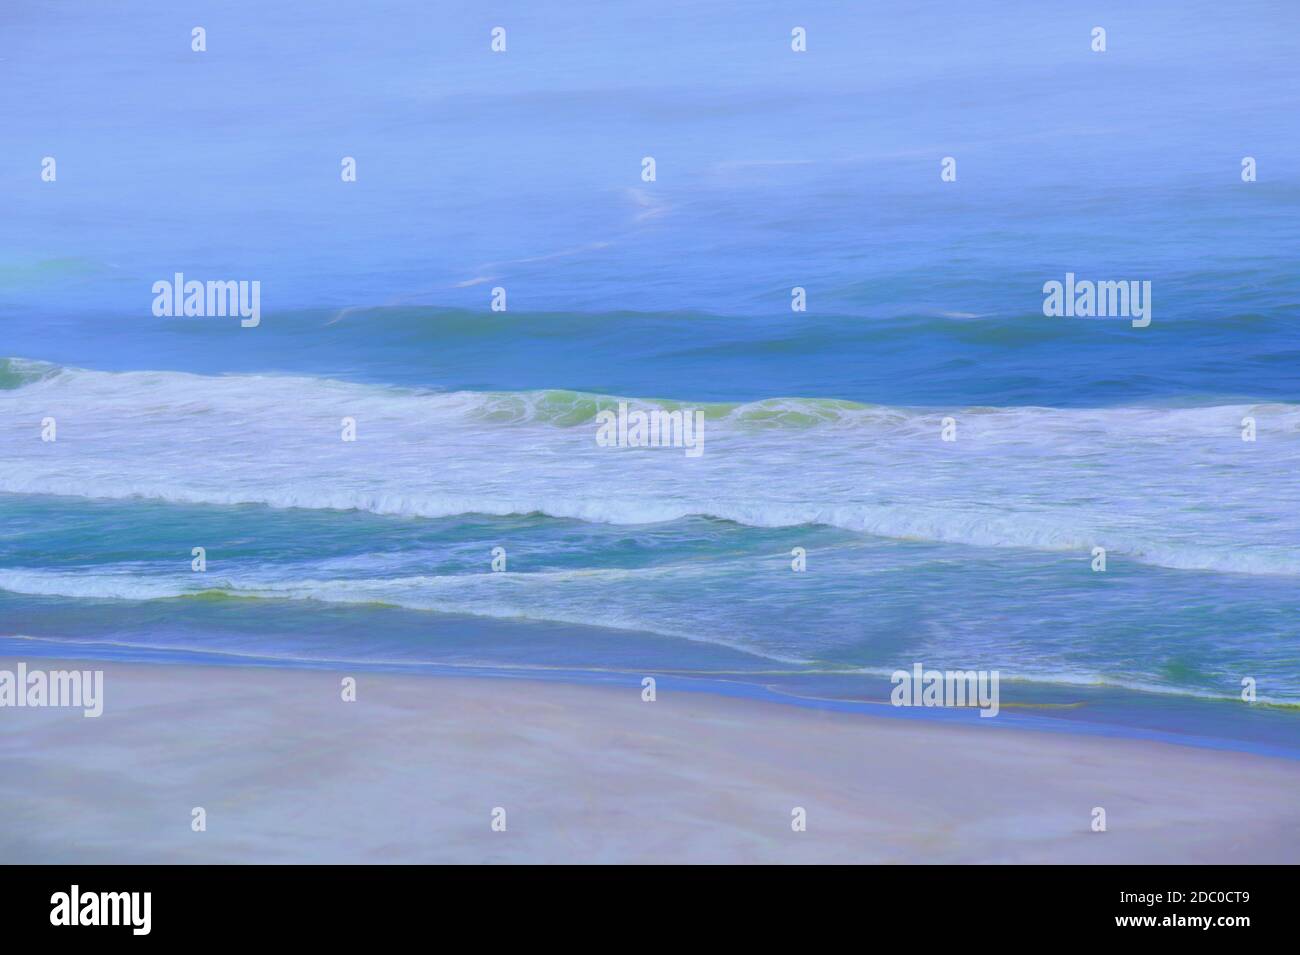 Strand: Ich wollte Perfektion in einem einzigen Bild festhalten. Ich fand die Begriffe 'Minimalismus' und 'weniger ist mehr' wunderbare Ziele, die man in der Kunst anstreben kann Stockfoto